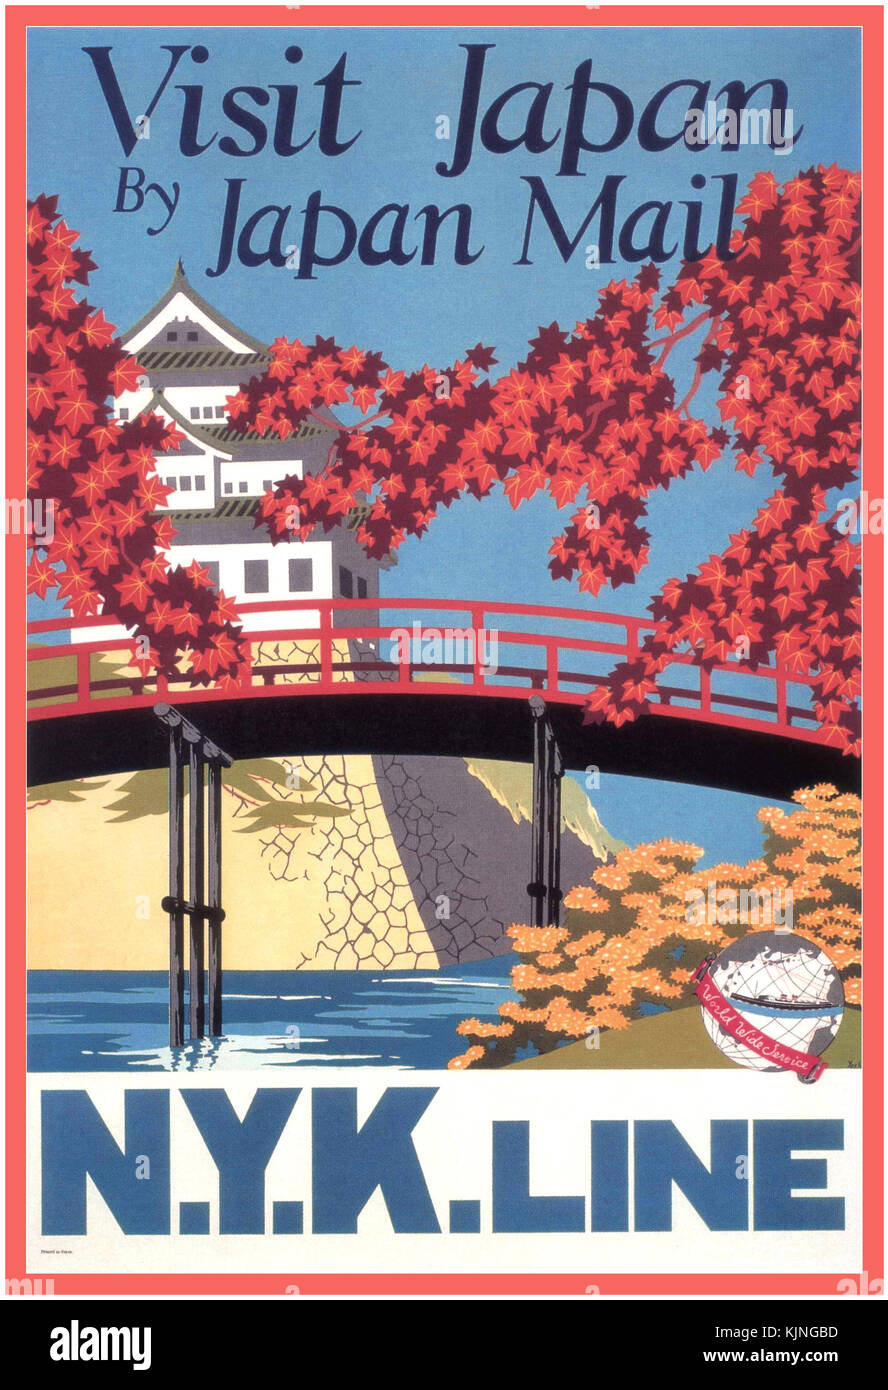 Vintage Travel Poster 1930 für N.Y.K Linie nach Japan. Das Imperial Palace in Tokio in dem Fall "Visit Japan von Japan Mail N.Y.K. Linie." illustriert von Yoshi, circa 1935. Stockfoto